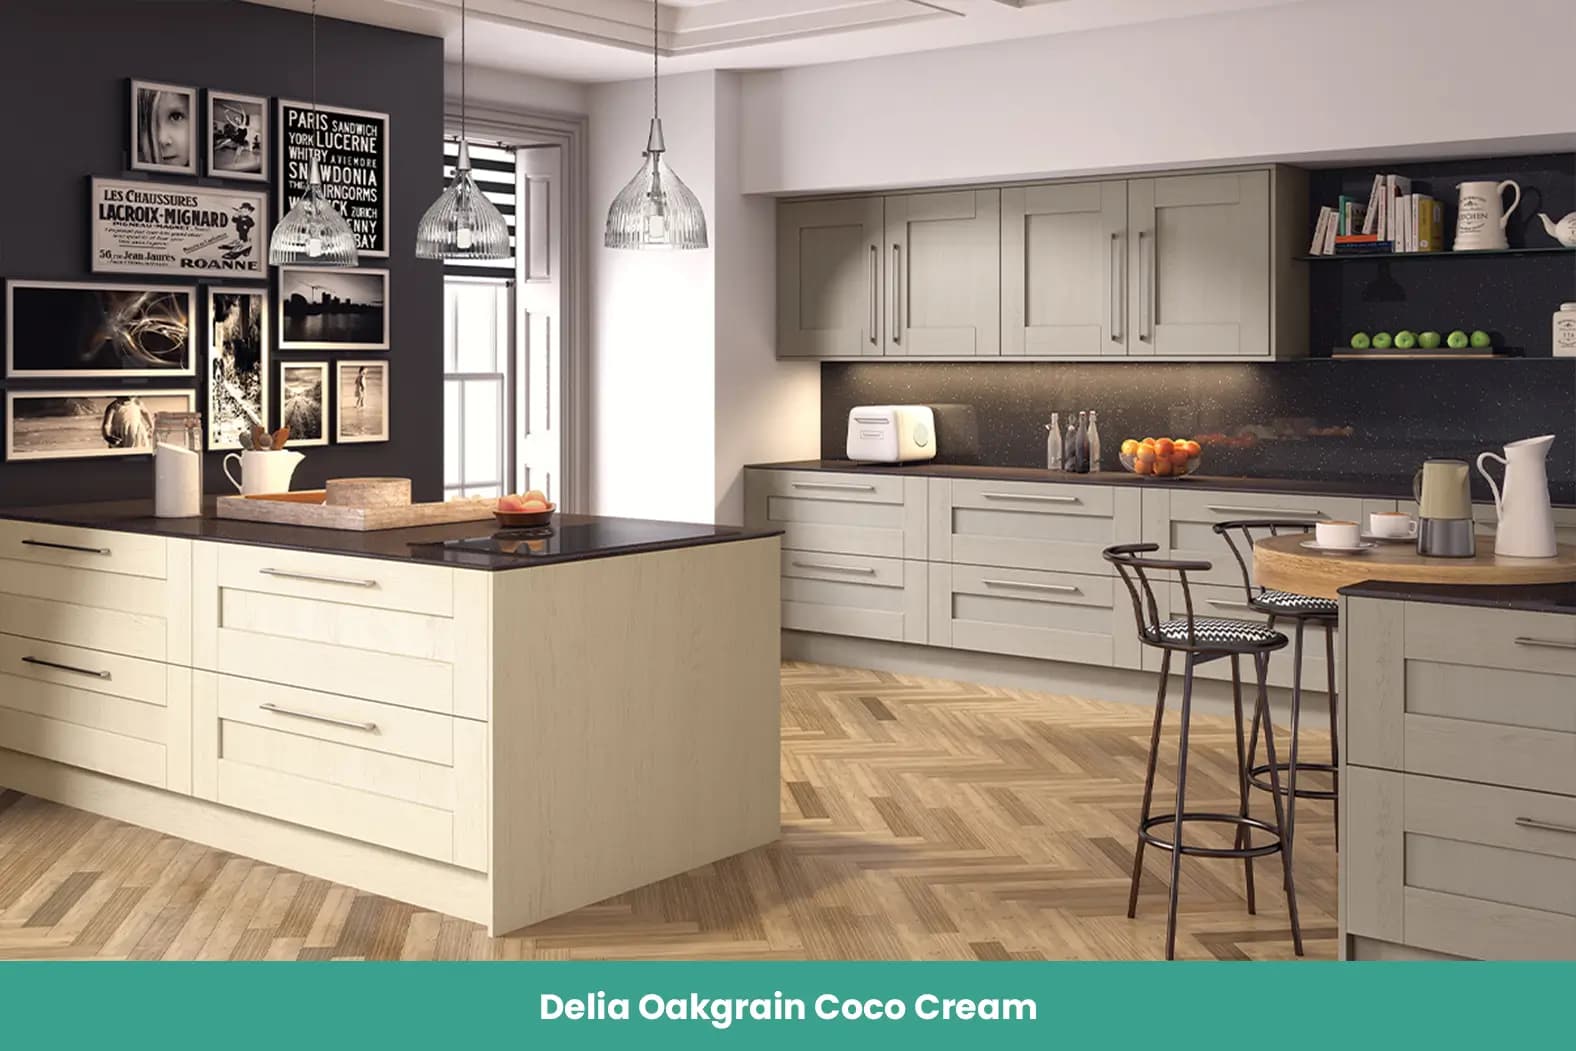 Delia Oakgrain Coco Cream Kitchen